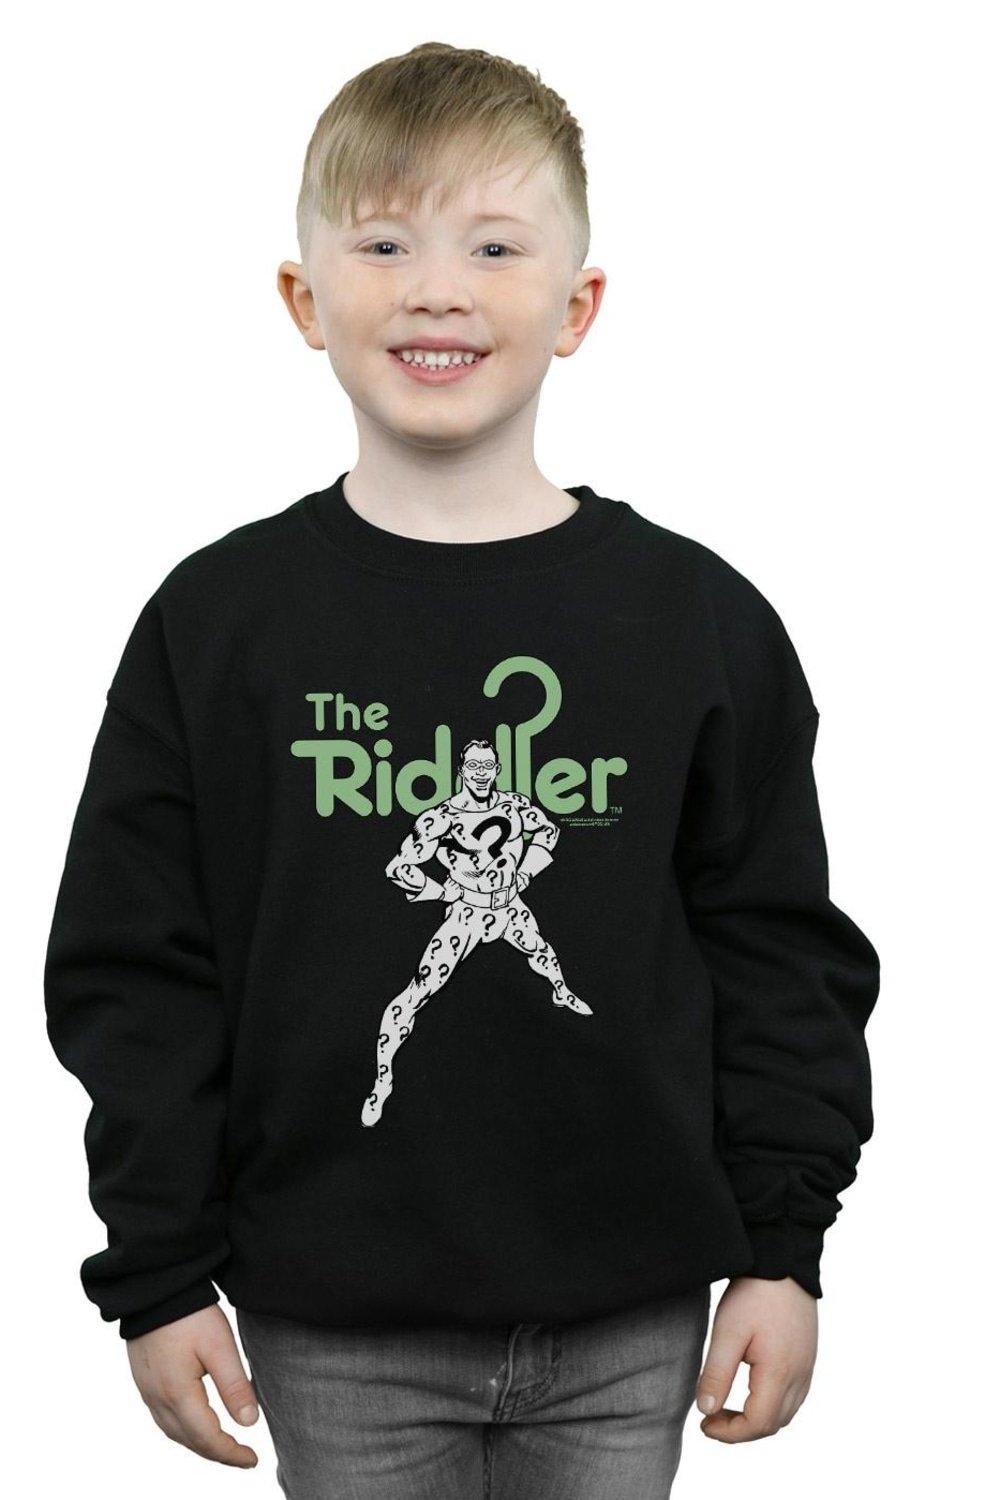 The Riddler Mono Action Pose Sweatshirt